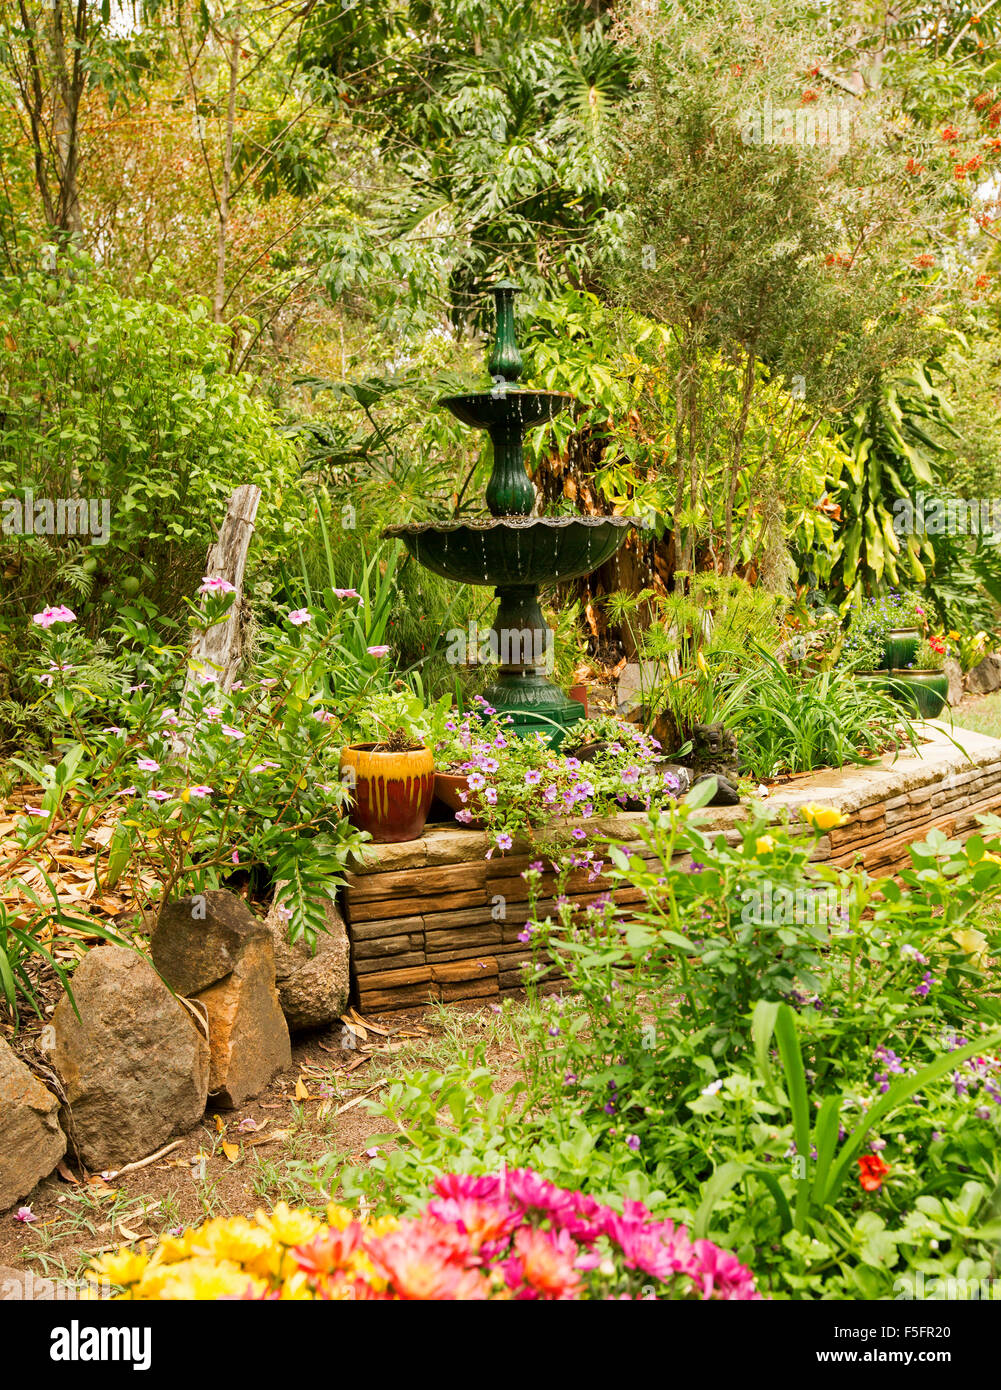 Giardino decorativo caratteristica con un basso muro di pietra, fontana ornata & piante in contenitori, orlata da arbusti, gli alpinisti e gli alti alberi Foto Stock